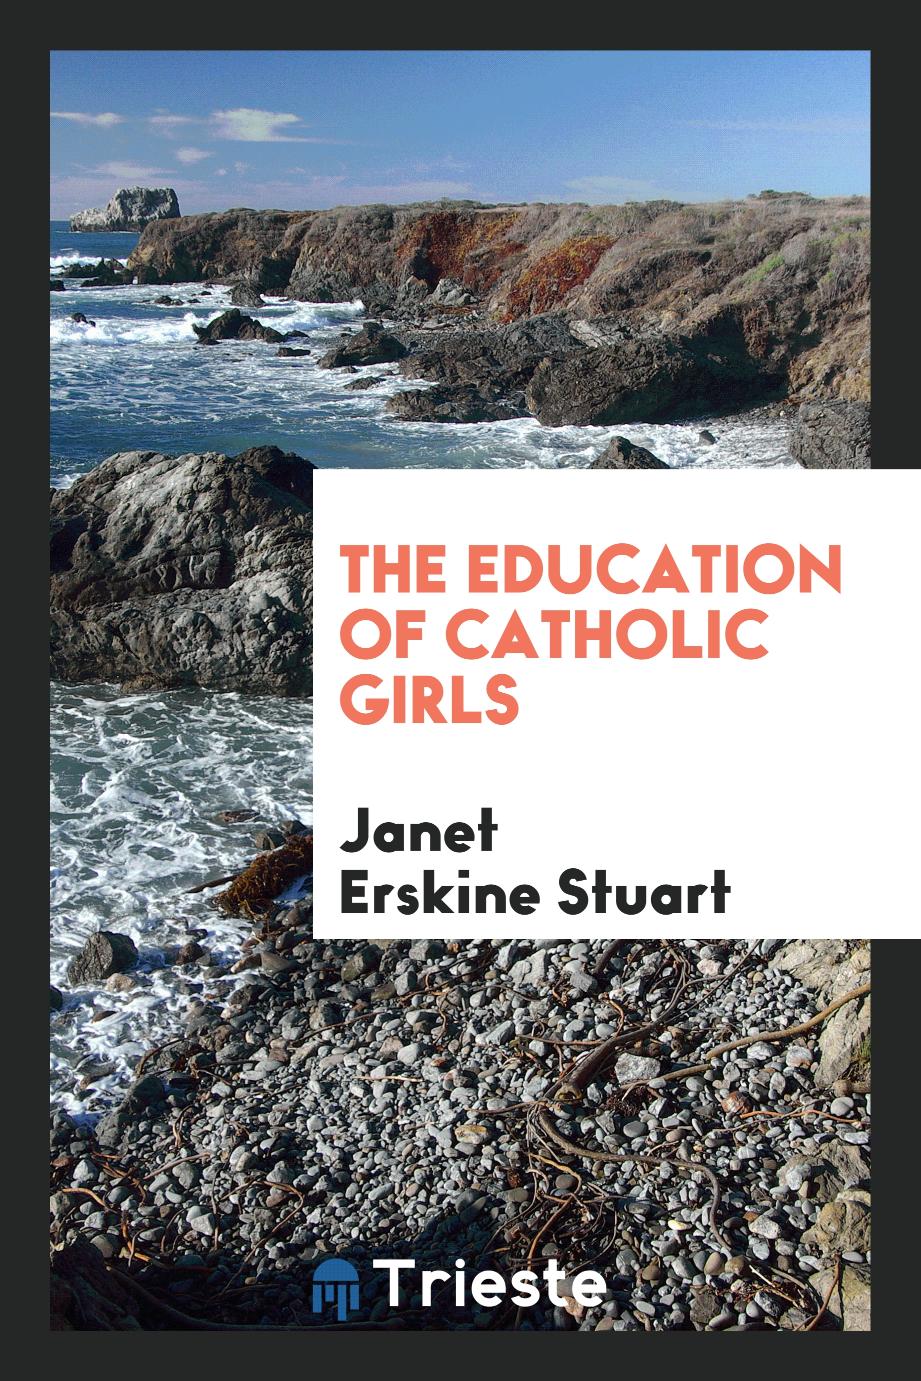 The education of Catholic girls